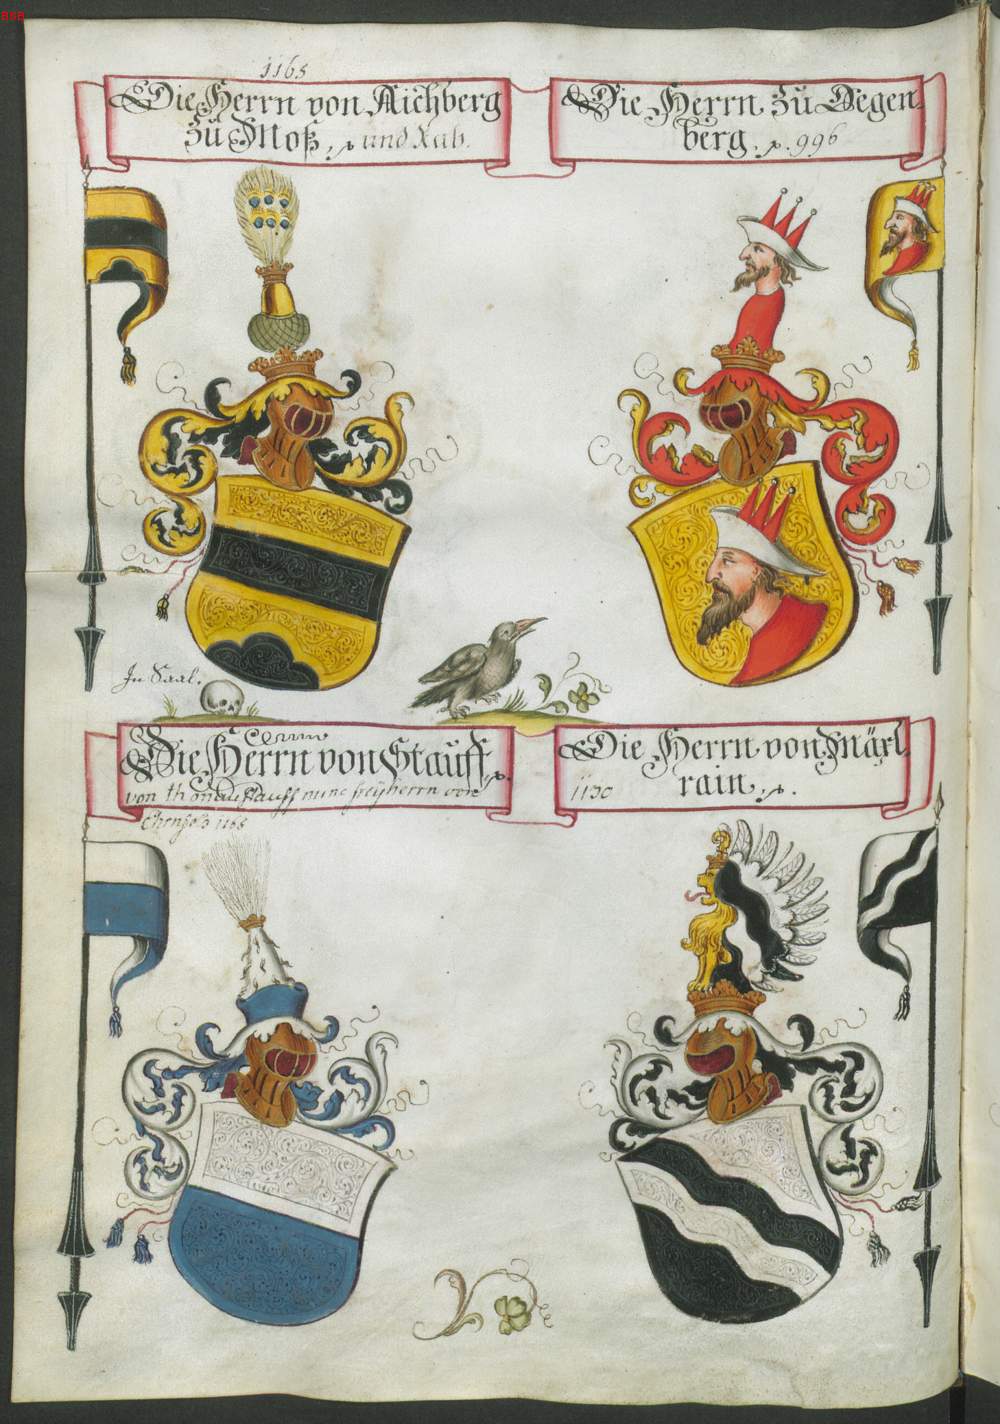 heraldic devices